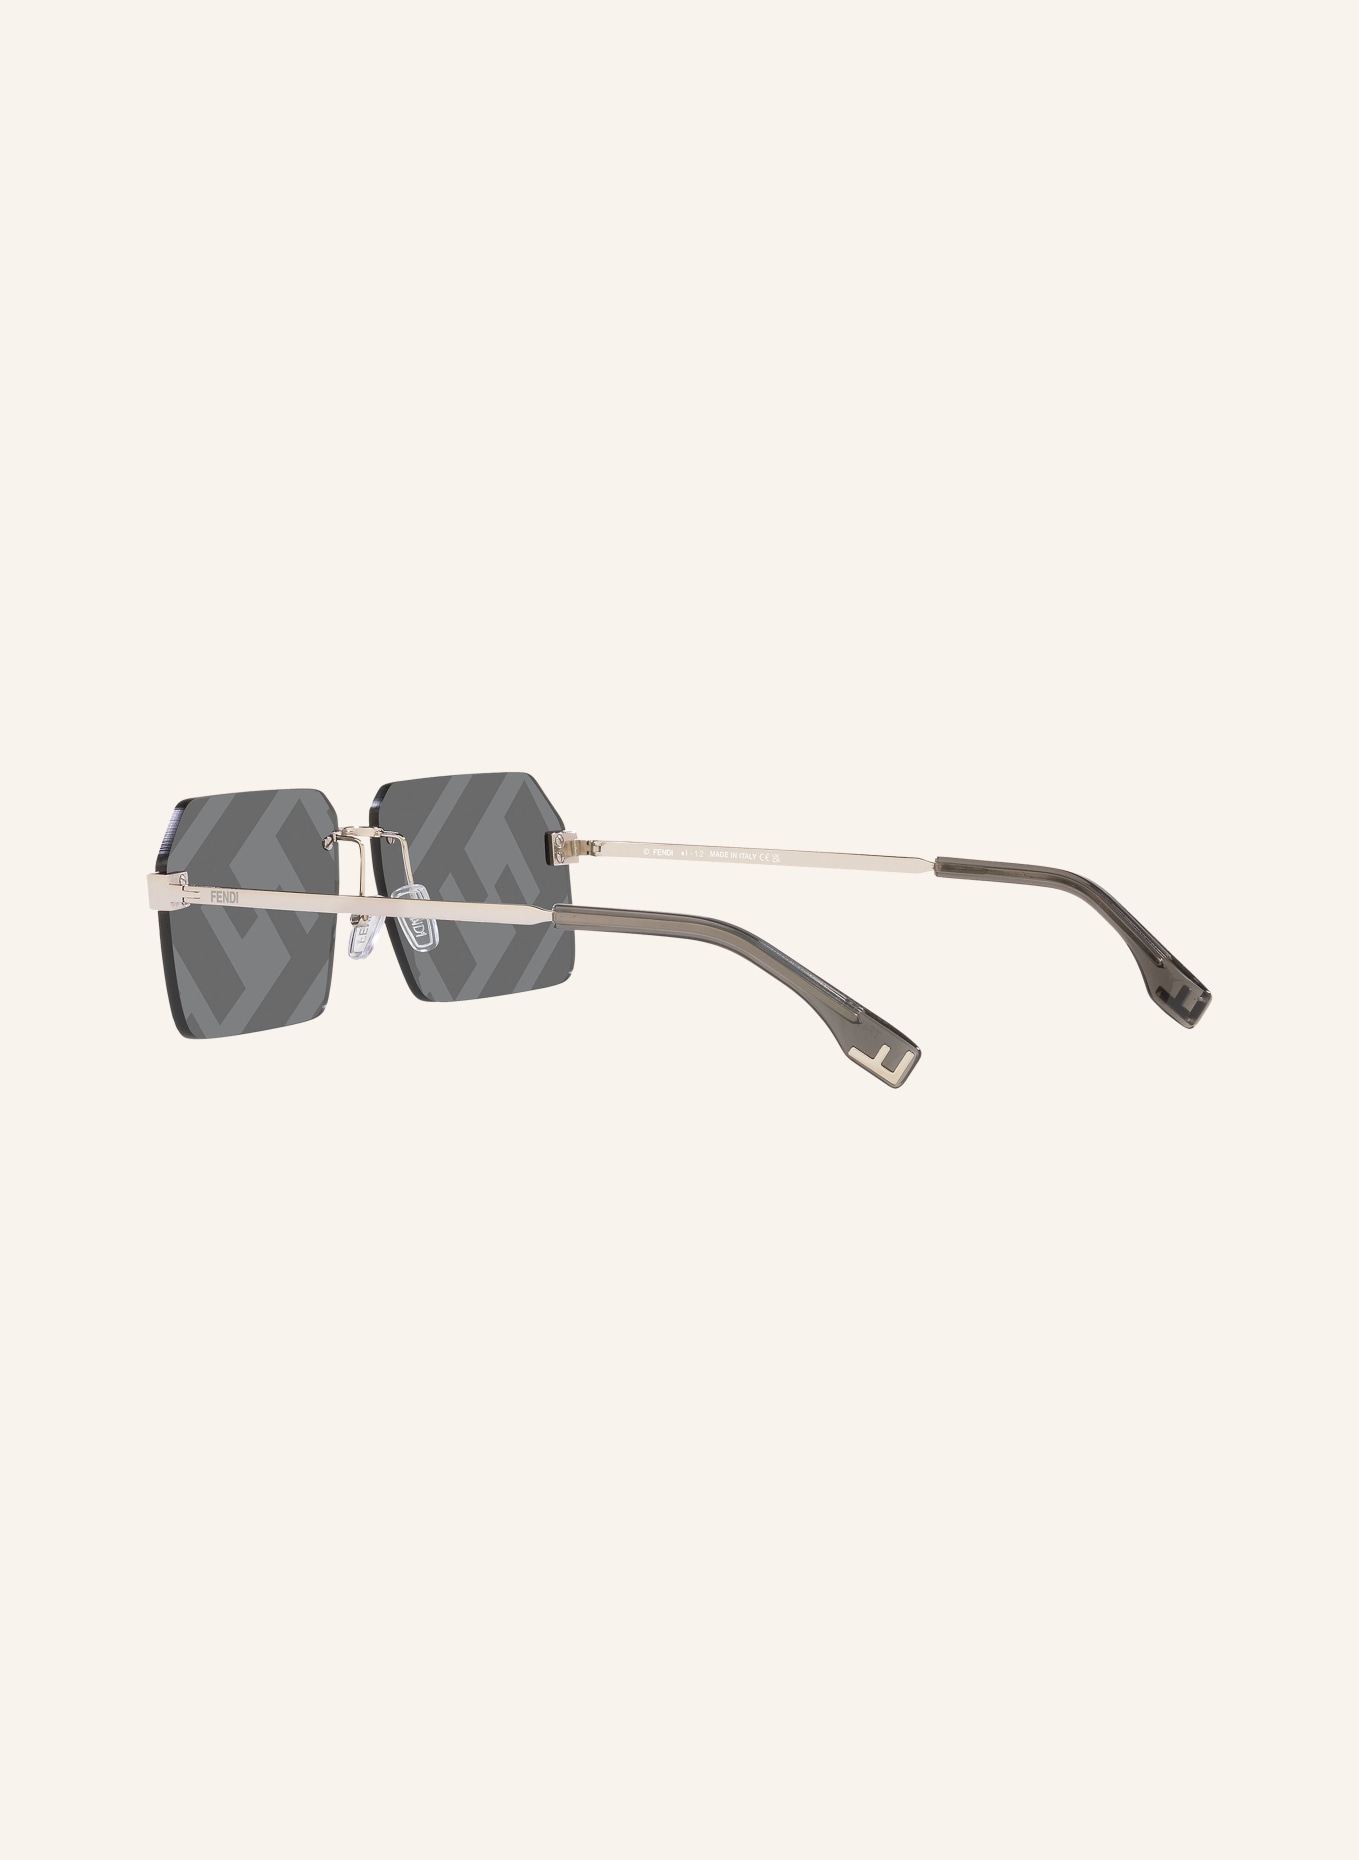 FENDI Sunglasses FN000605, Color: 2700L8 - SILVER/GRAY (Image 4)